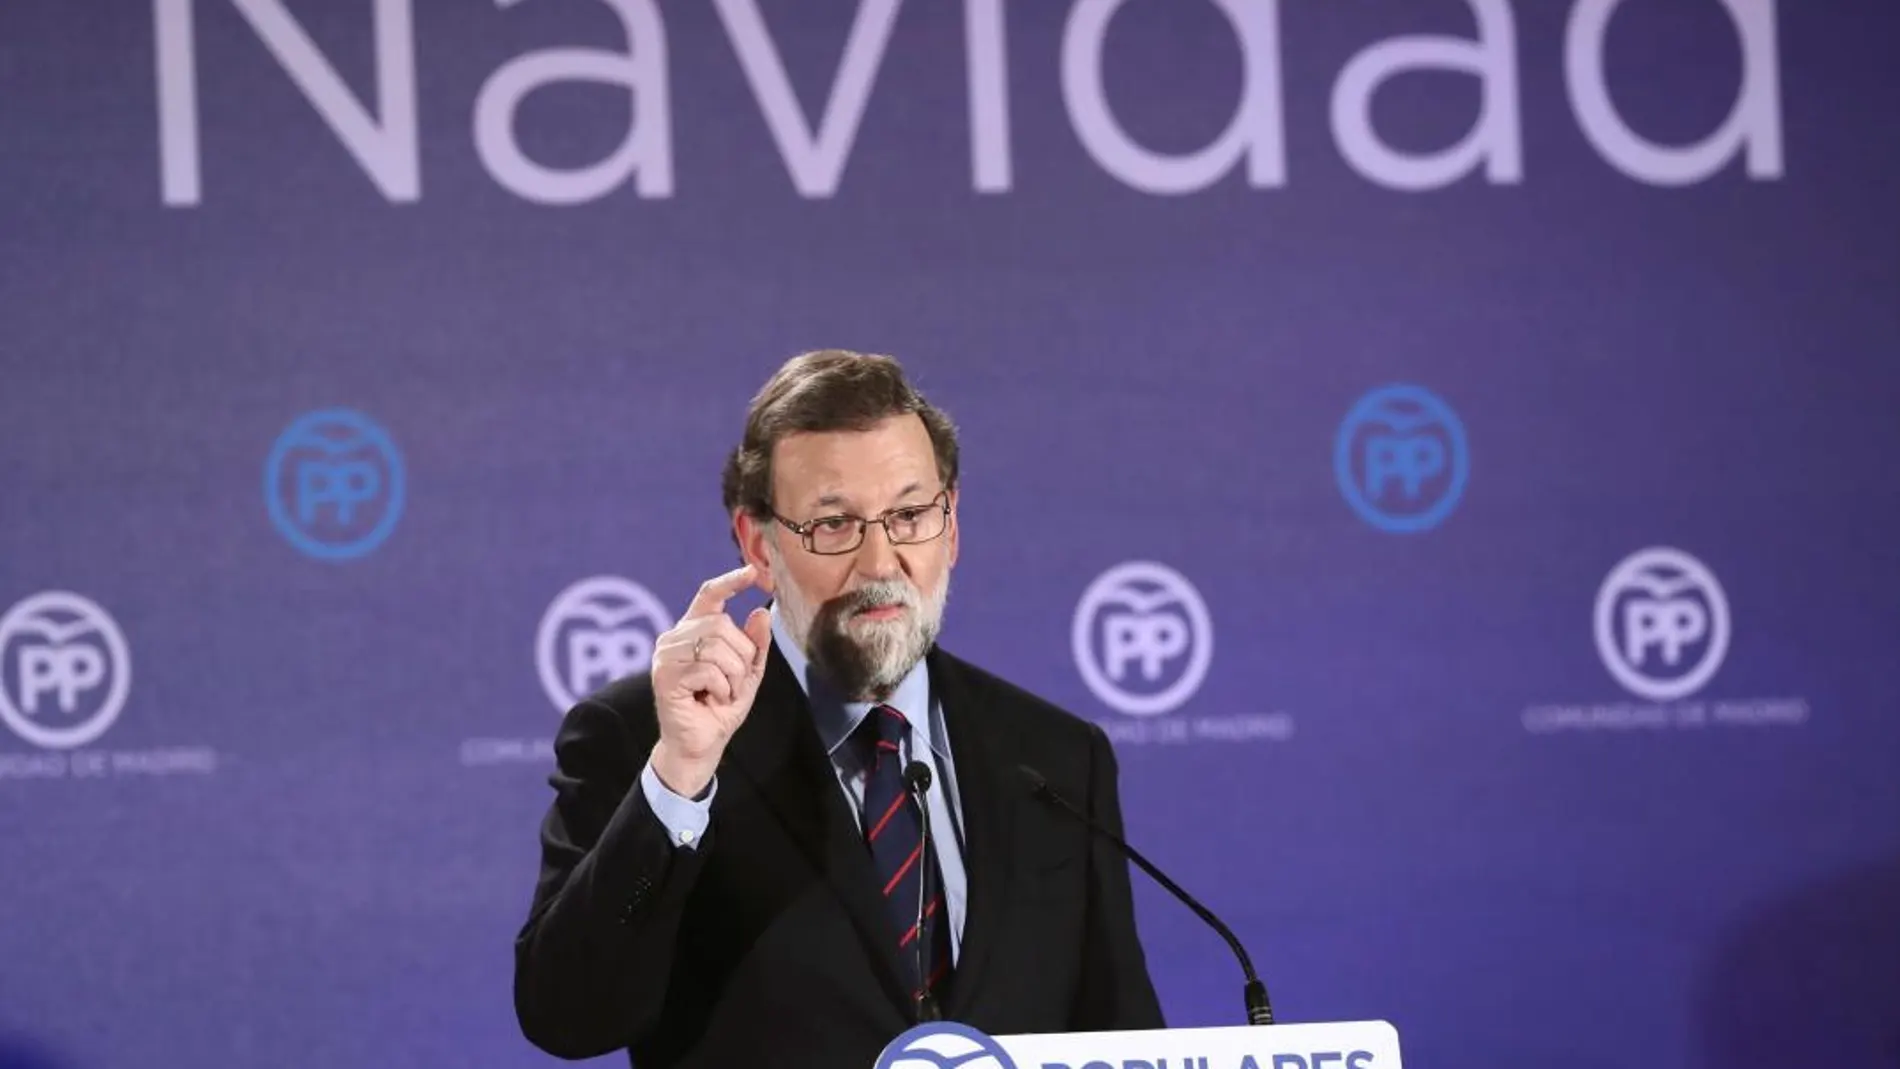 El presidente del Gobierno y del PP, Mariano Rajoy, interviene en la cena de navidad del PP de Madrid